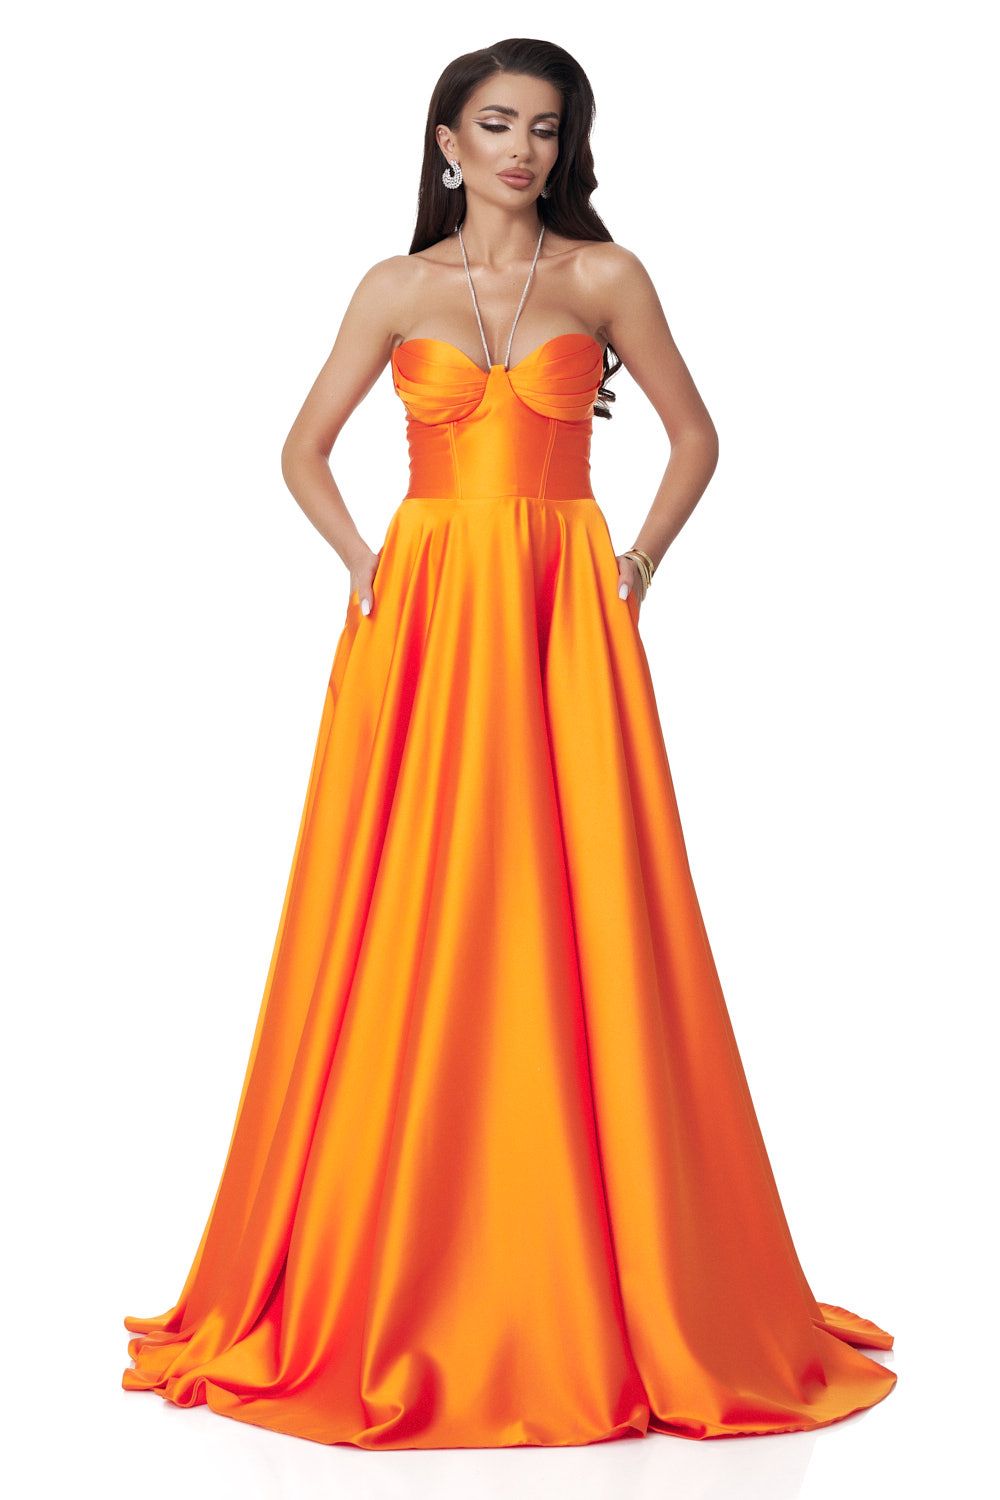 Nayeli Bogas hosszú narancssárga taft női ruha